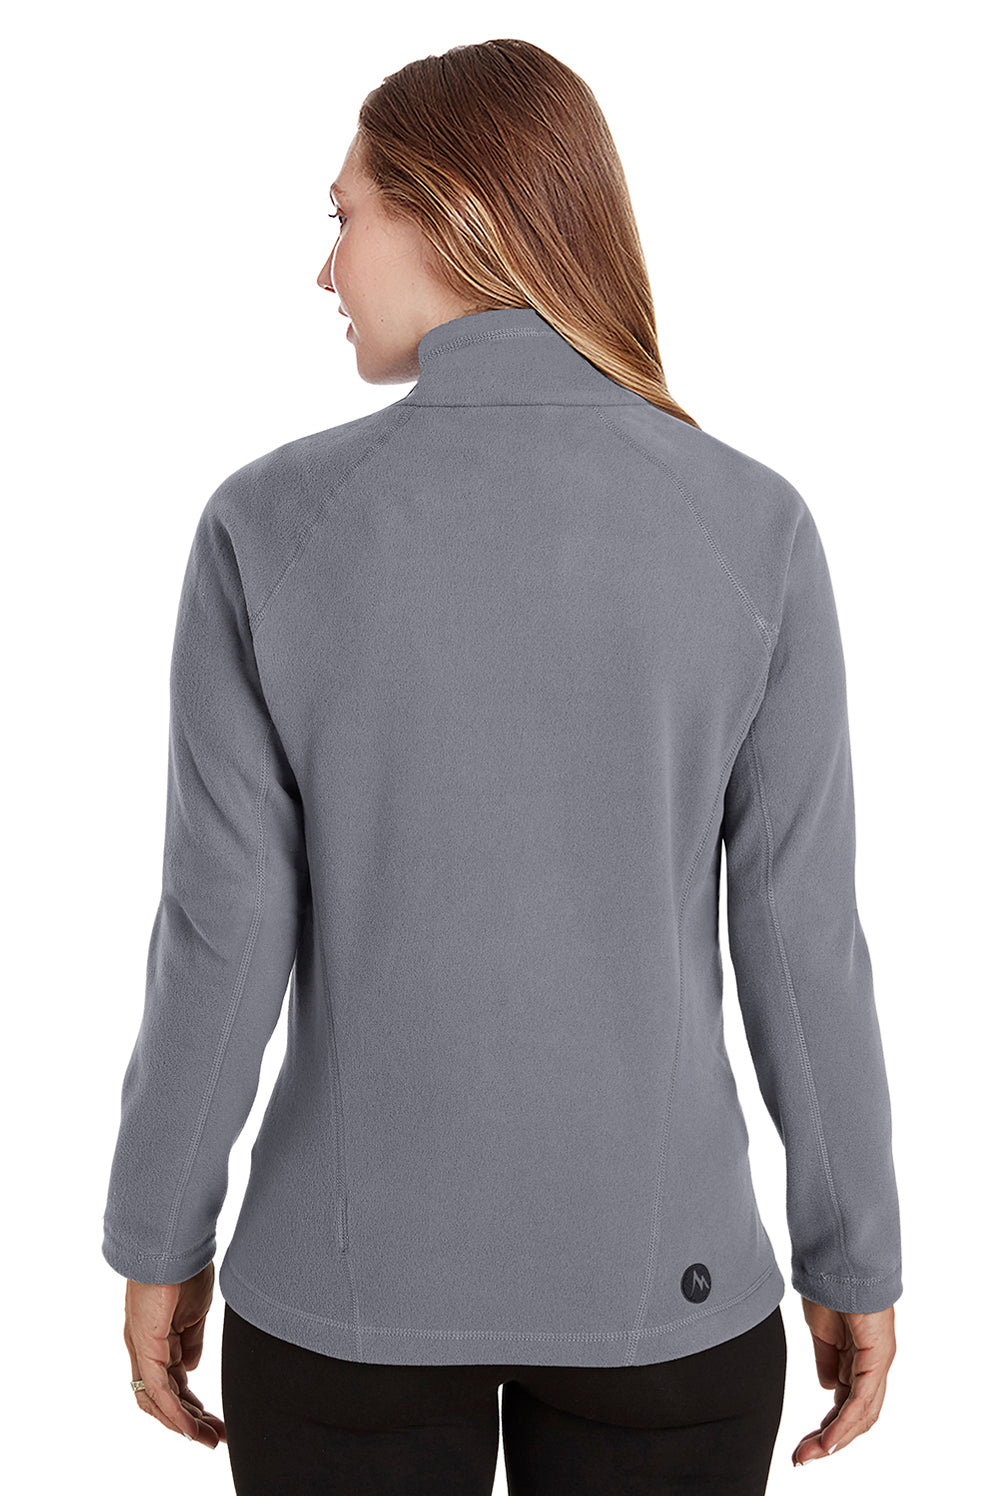 Marmot 901078 Womens Rocklin Fleece Full Zip Jacket Steel Grey Back